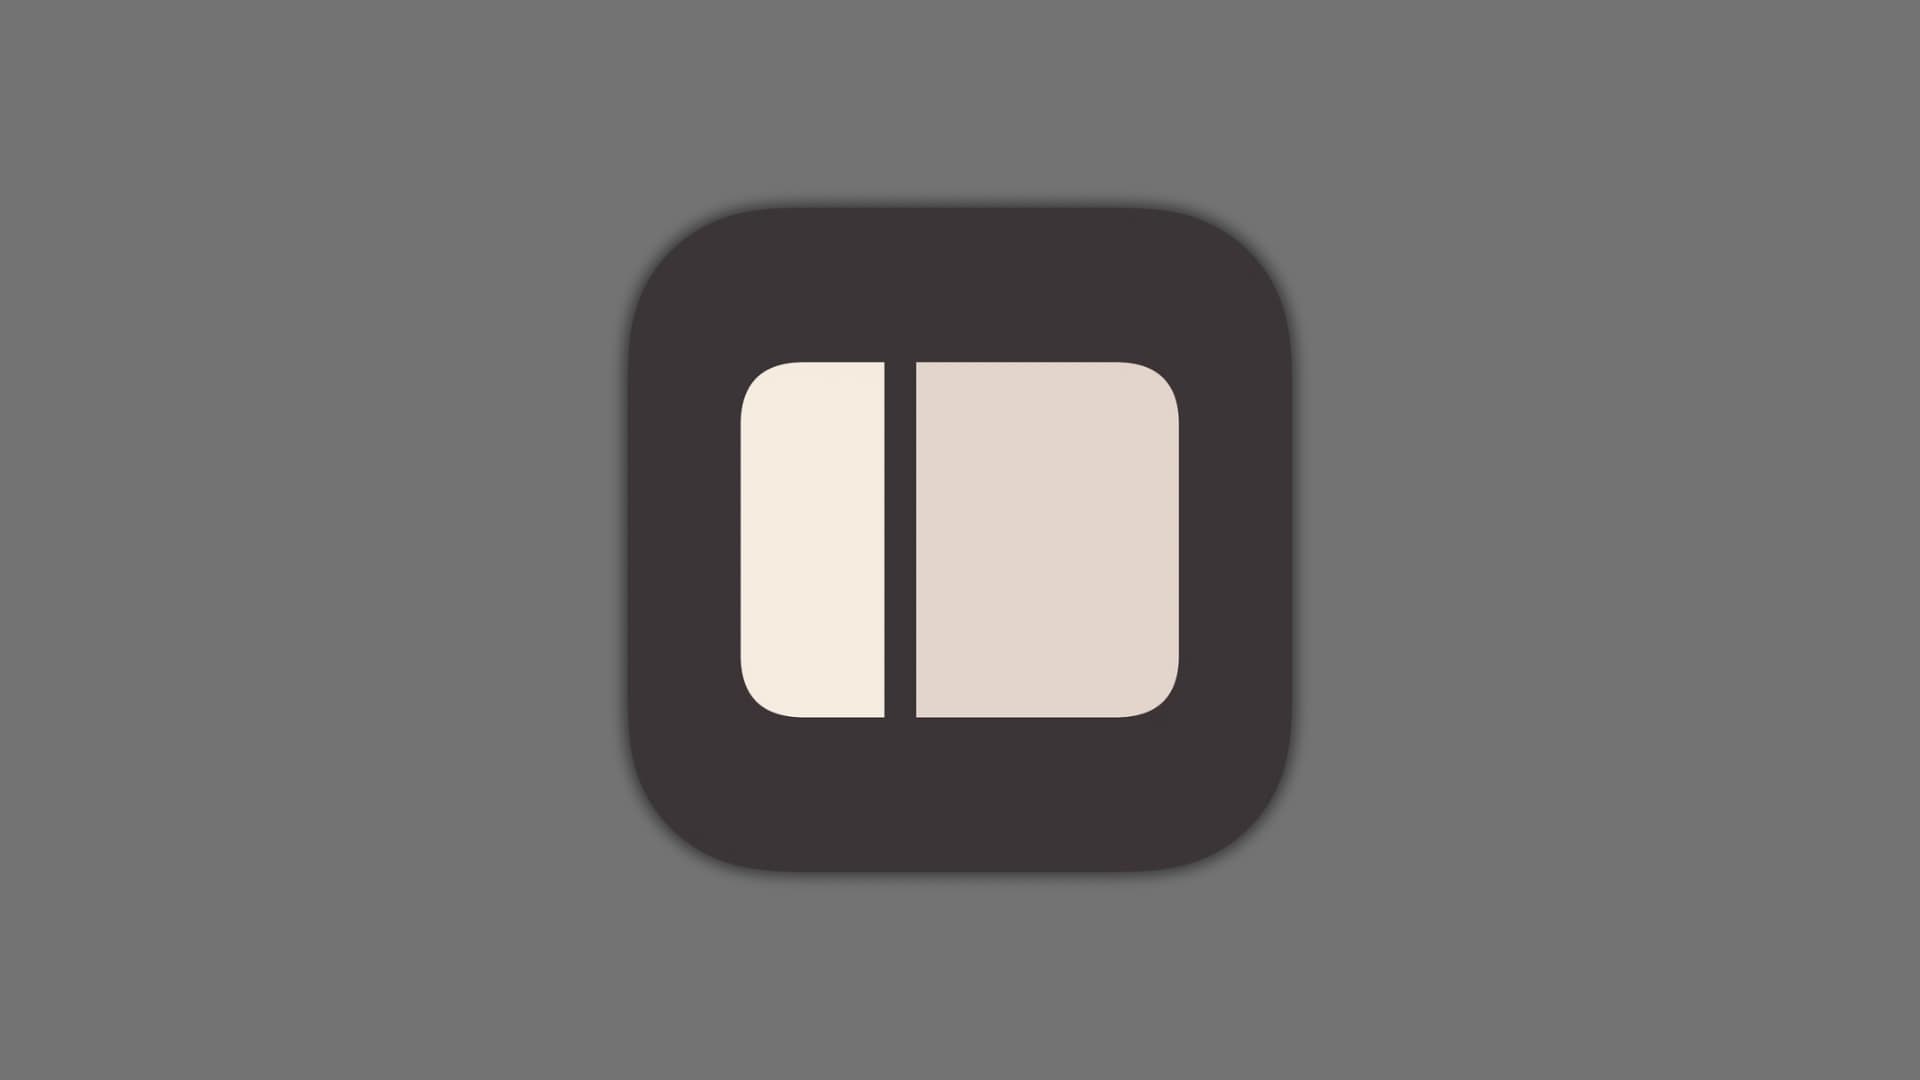 SplitViewEverywhere enables Split View multitasking for all apps on jailbroken iPads